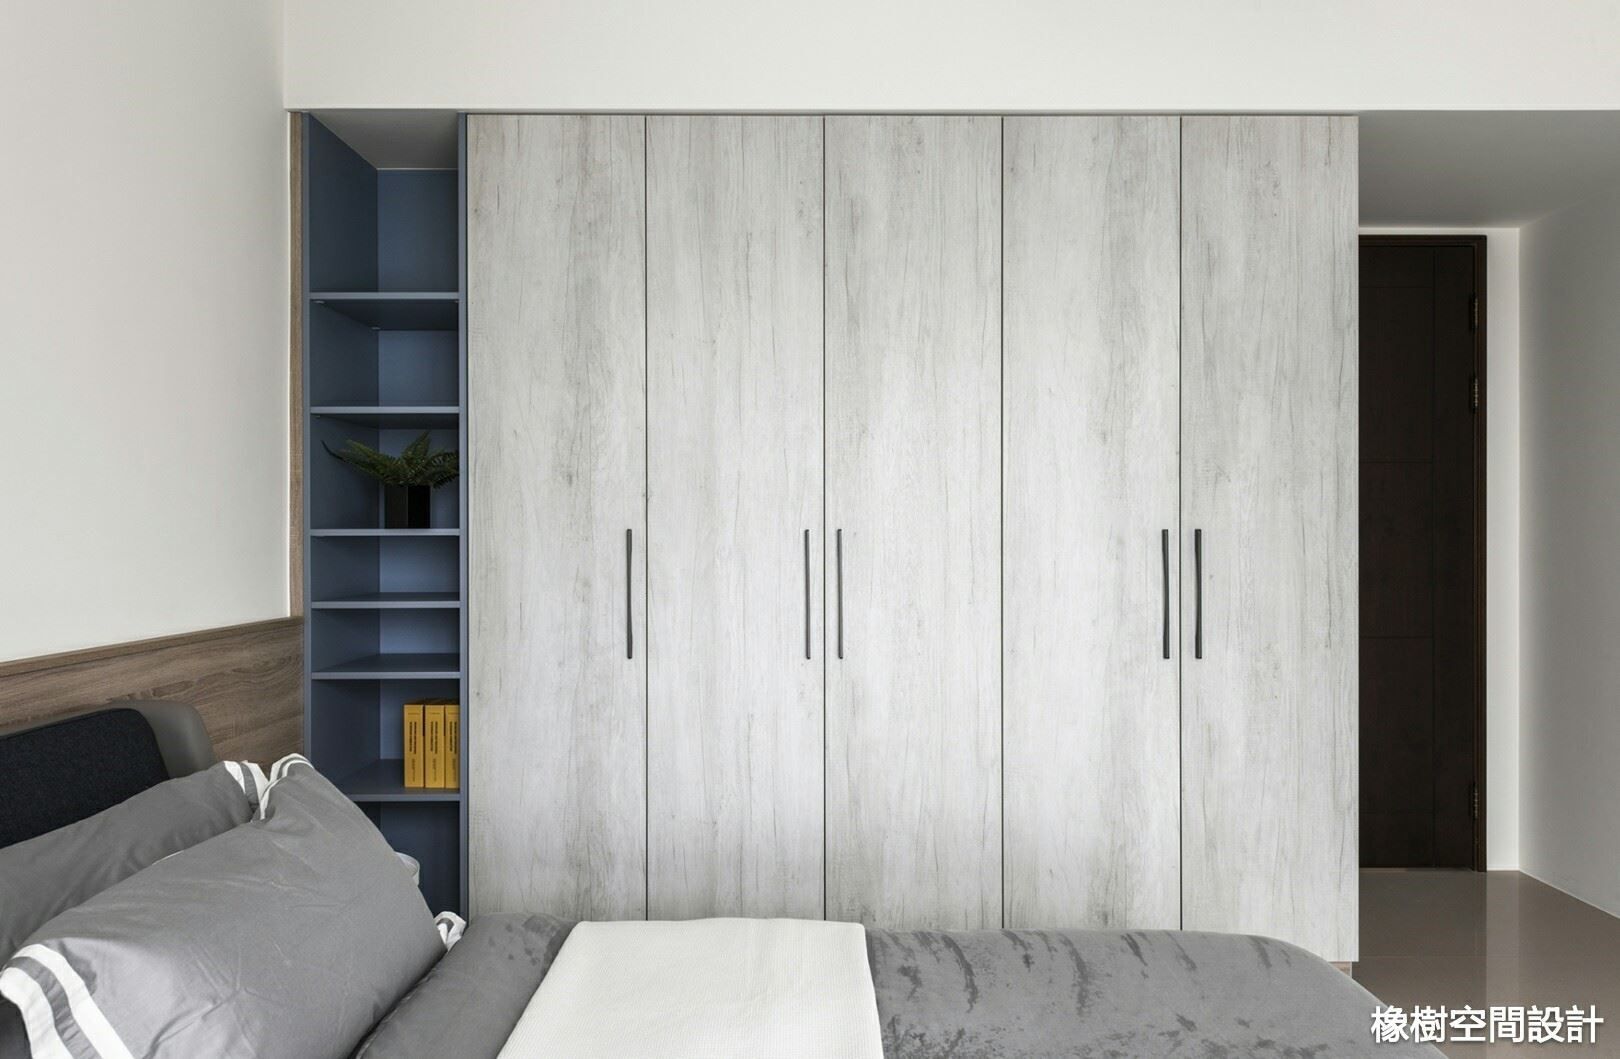 高雄 李宅, 橡樹設計Oak Design 橡樹設計Oak Design Dormitorios minimalistas